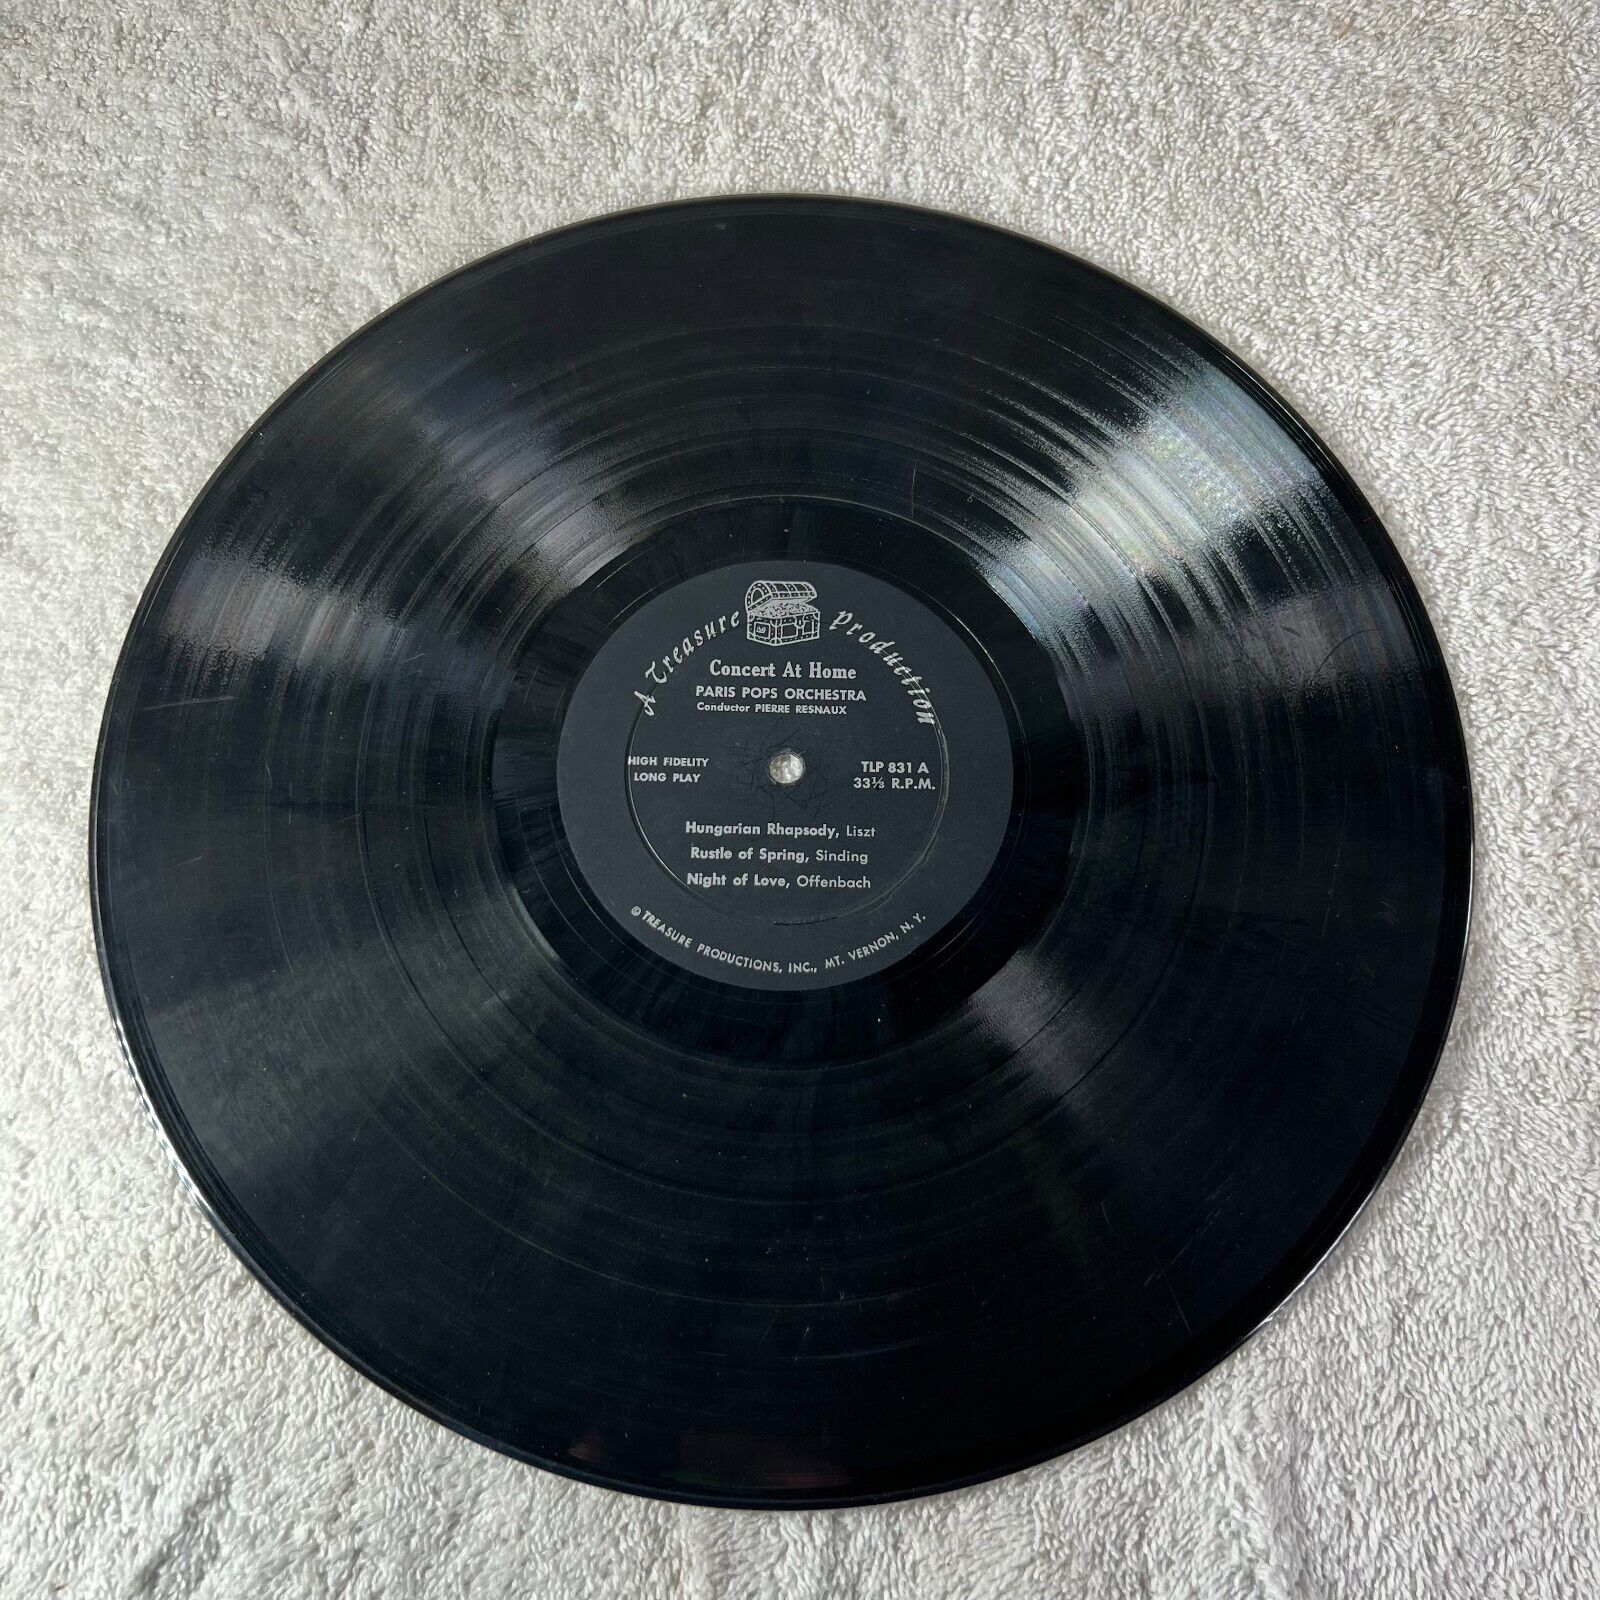 CONCERT AT HOME PARIS POPS ORCHESTRA Conductor PIERRE RESNAUX Vinyl LP TLP 831